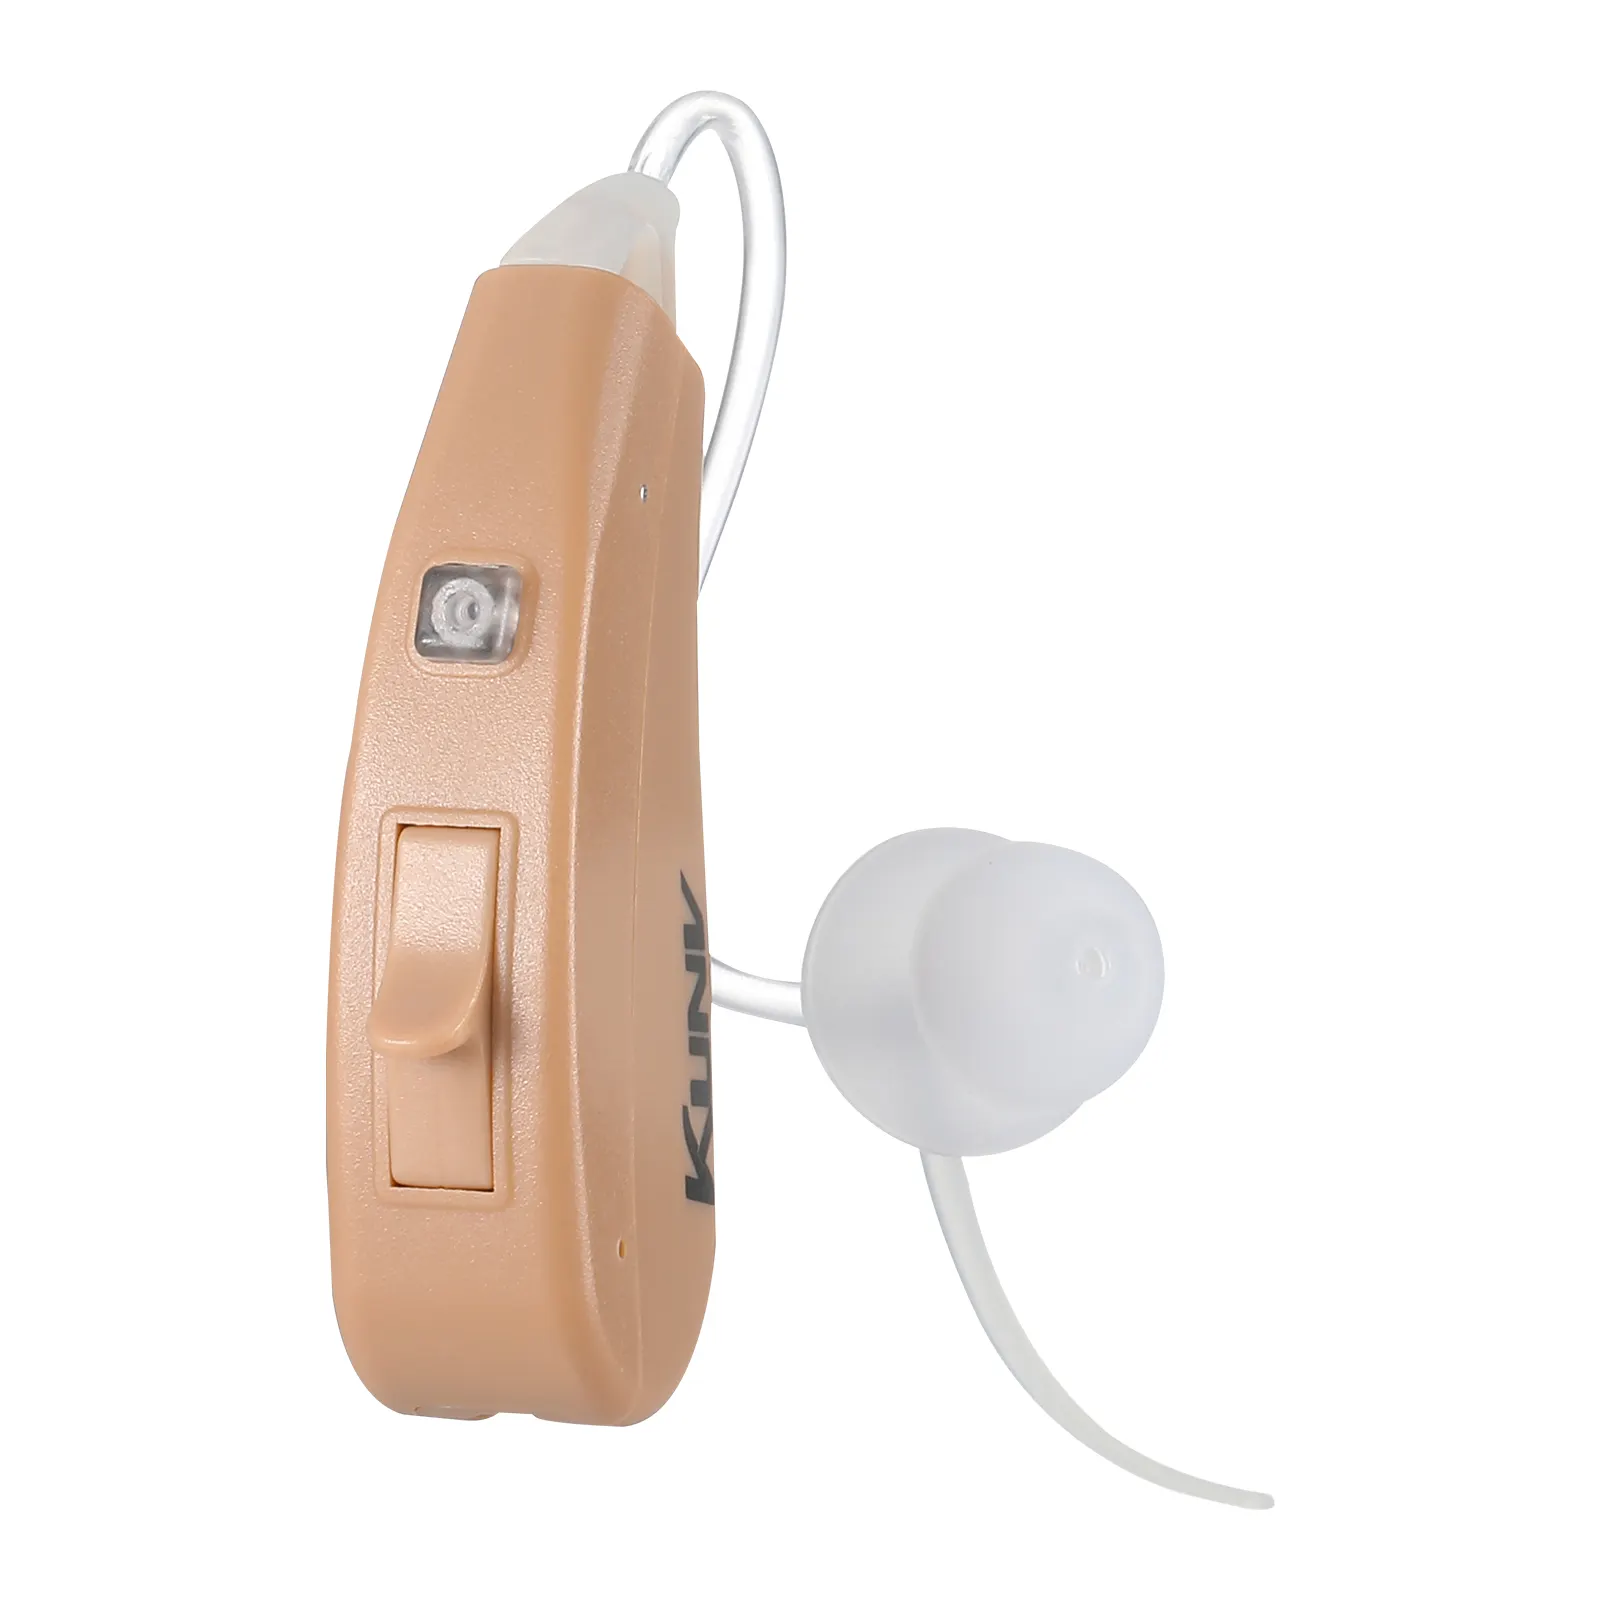 Bte наушники, перезаряжаемый звуковой усилитель, телефонный аппарат, аналоговый слуховой аппарат для глухих